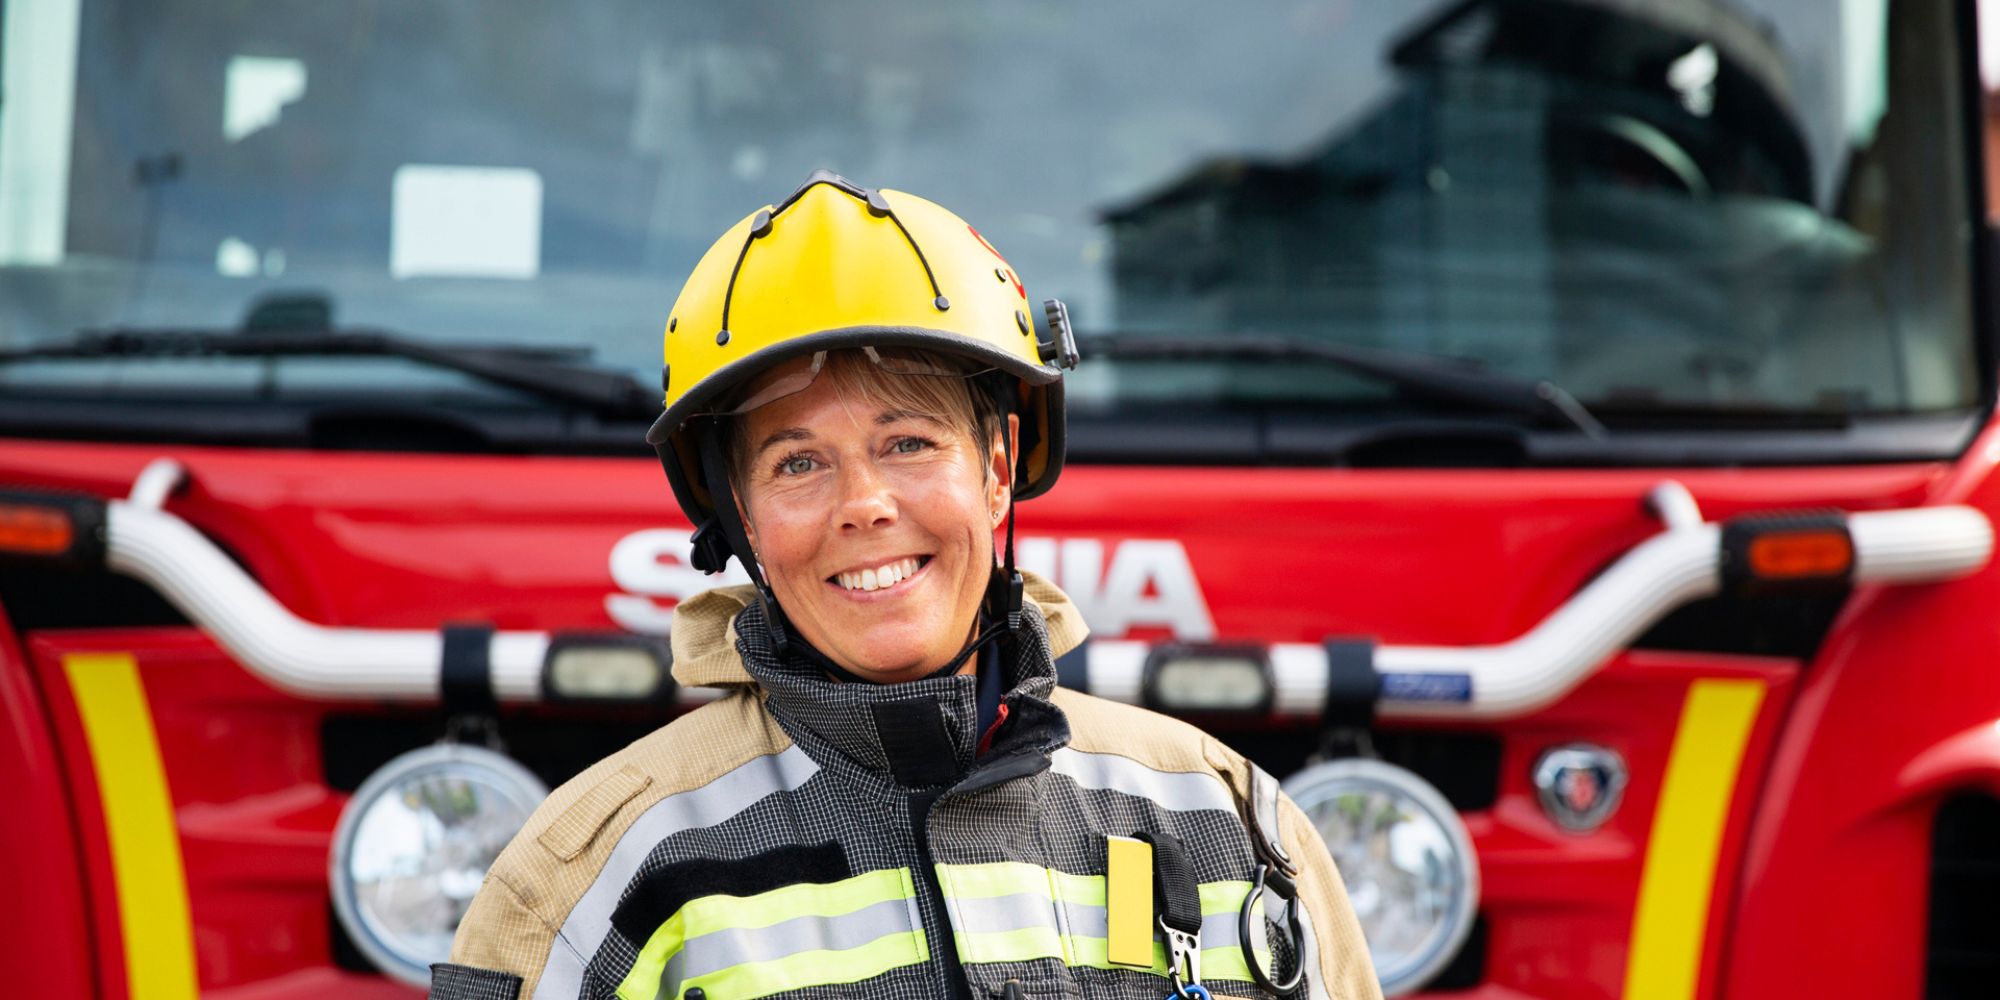 Kvinnlig brandman som ler och står framför en brandbil.